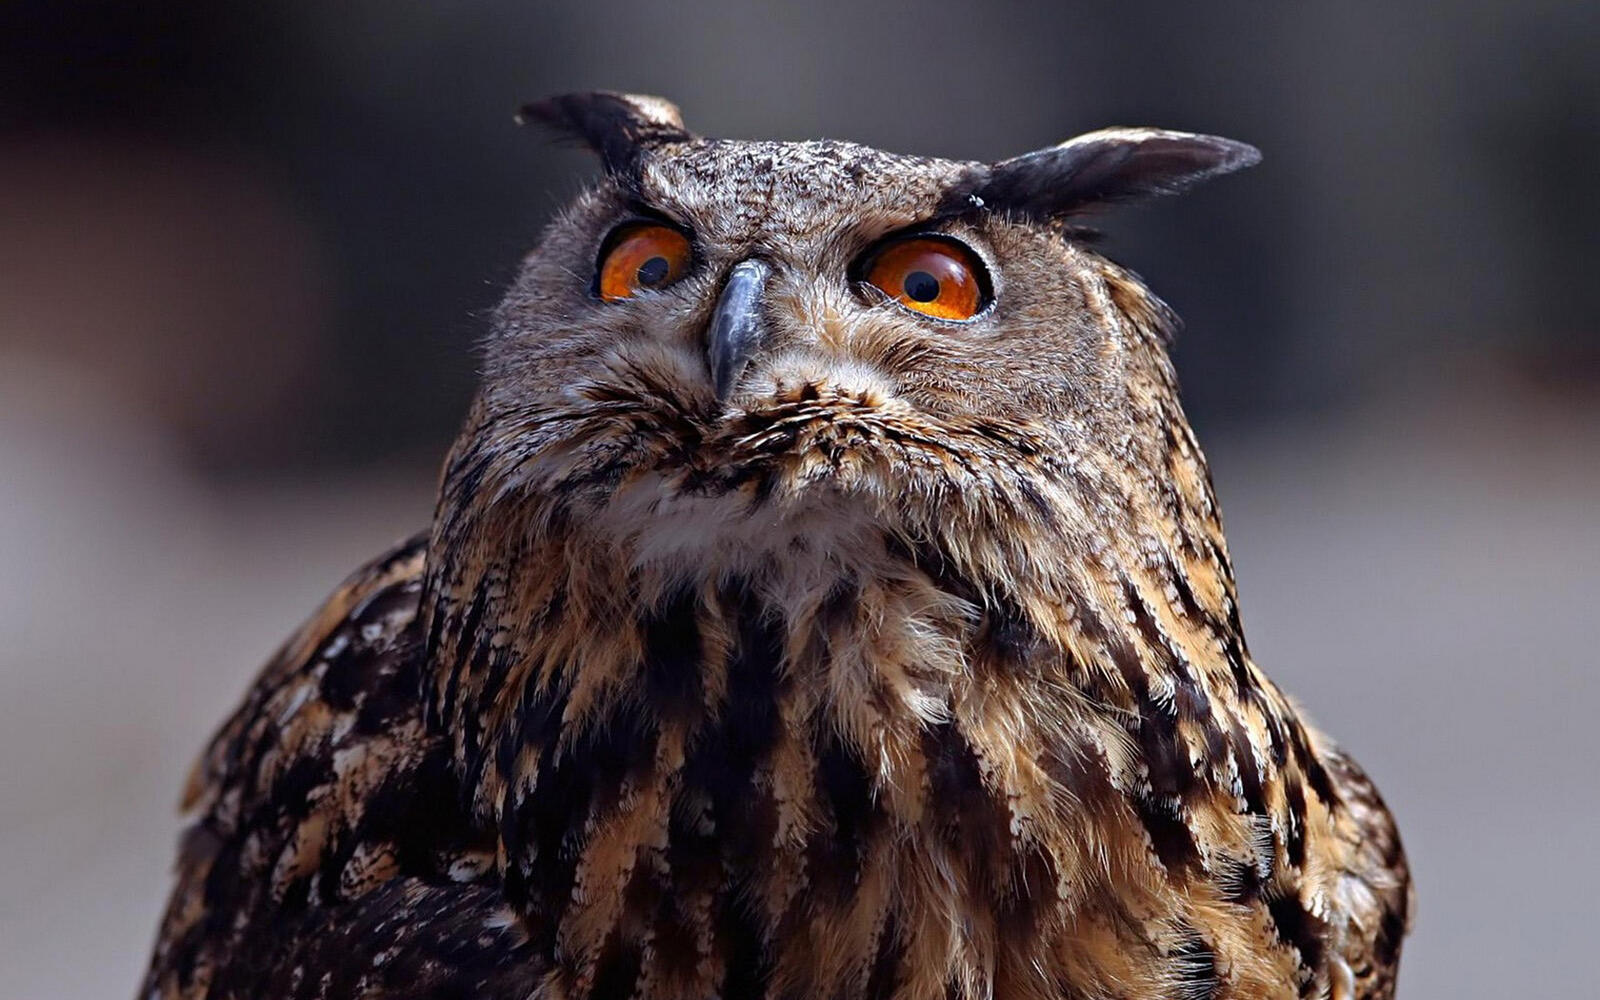 Wallpapers owl look surprised on the desktop